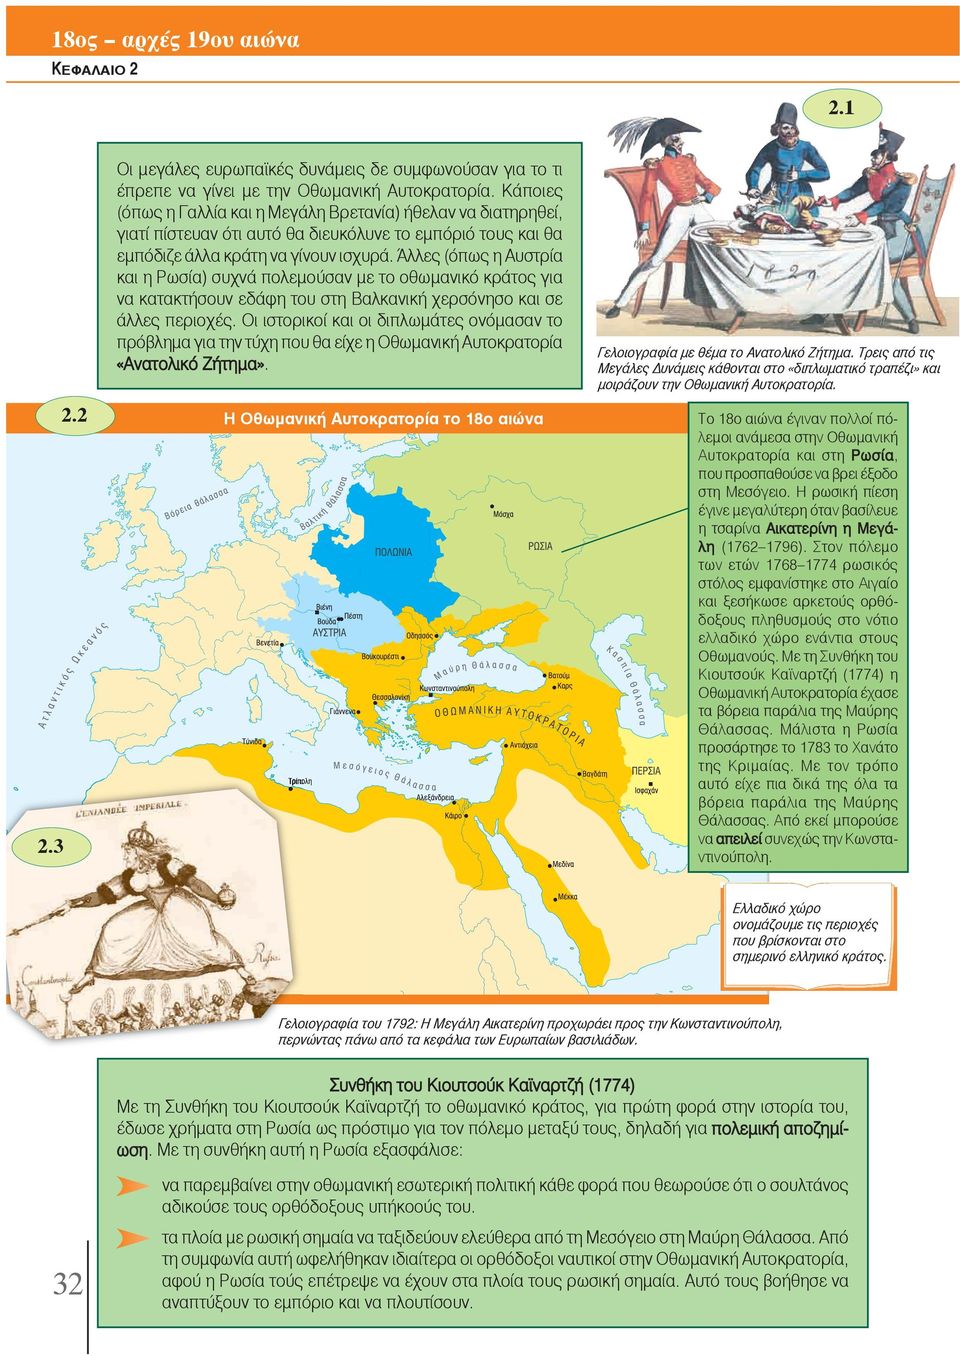 Άλλες (όπως η Αυστρία και η Ρωσία) συχνά πολεμούσαν με το οθωμανικό κράτος για να κατακτήσουν εδάφη του στη Βαλκανική χερσόνησο και σε άλλες περιοχές.